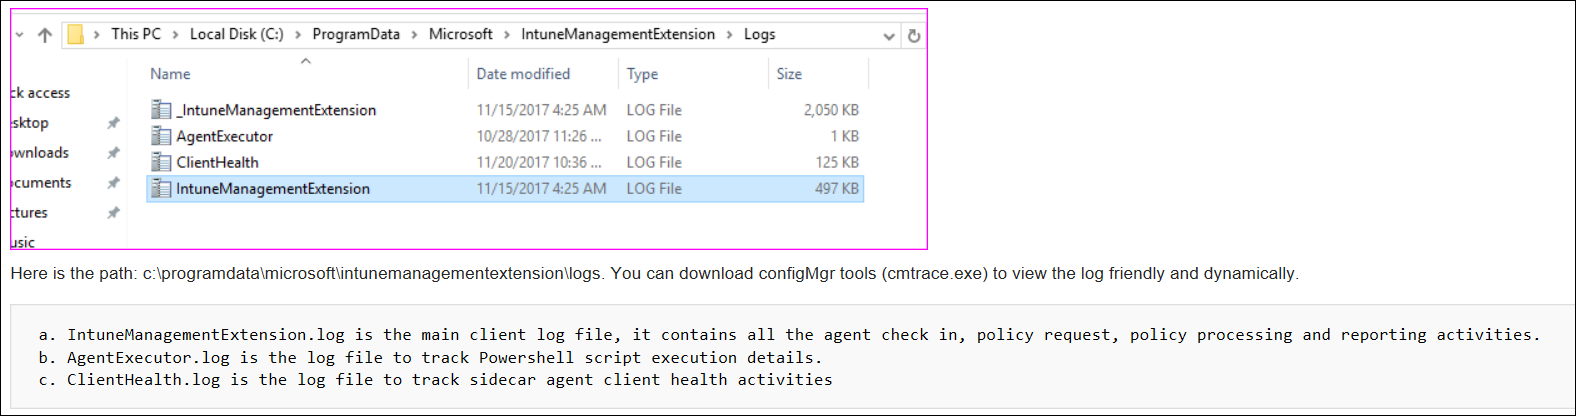 Skärmbild eller exempel på cmtrace-agentloggar i Microsoft Intune